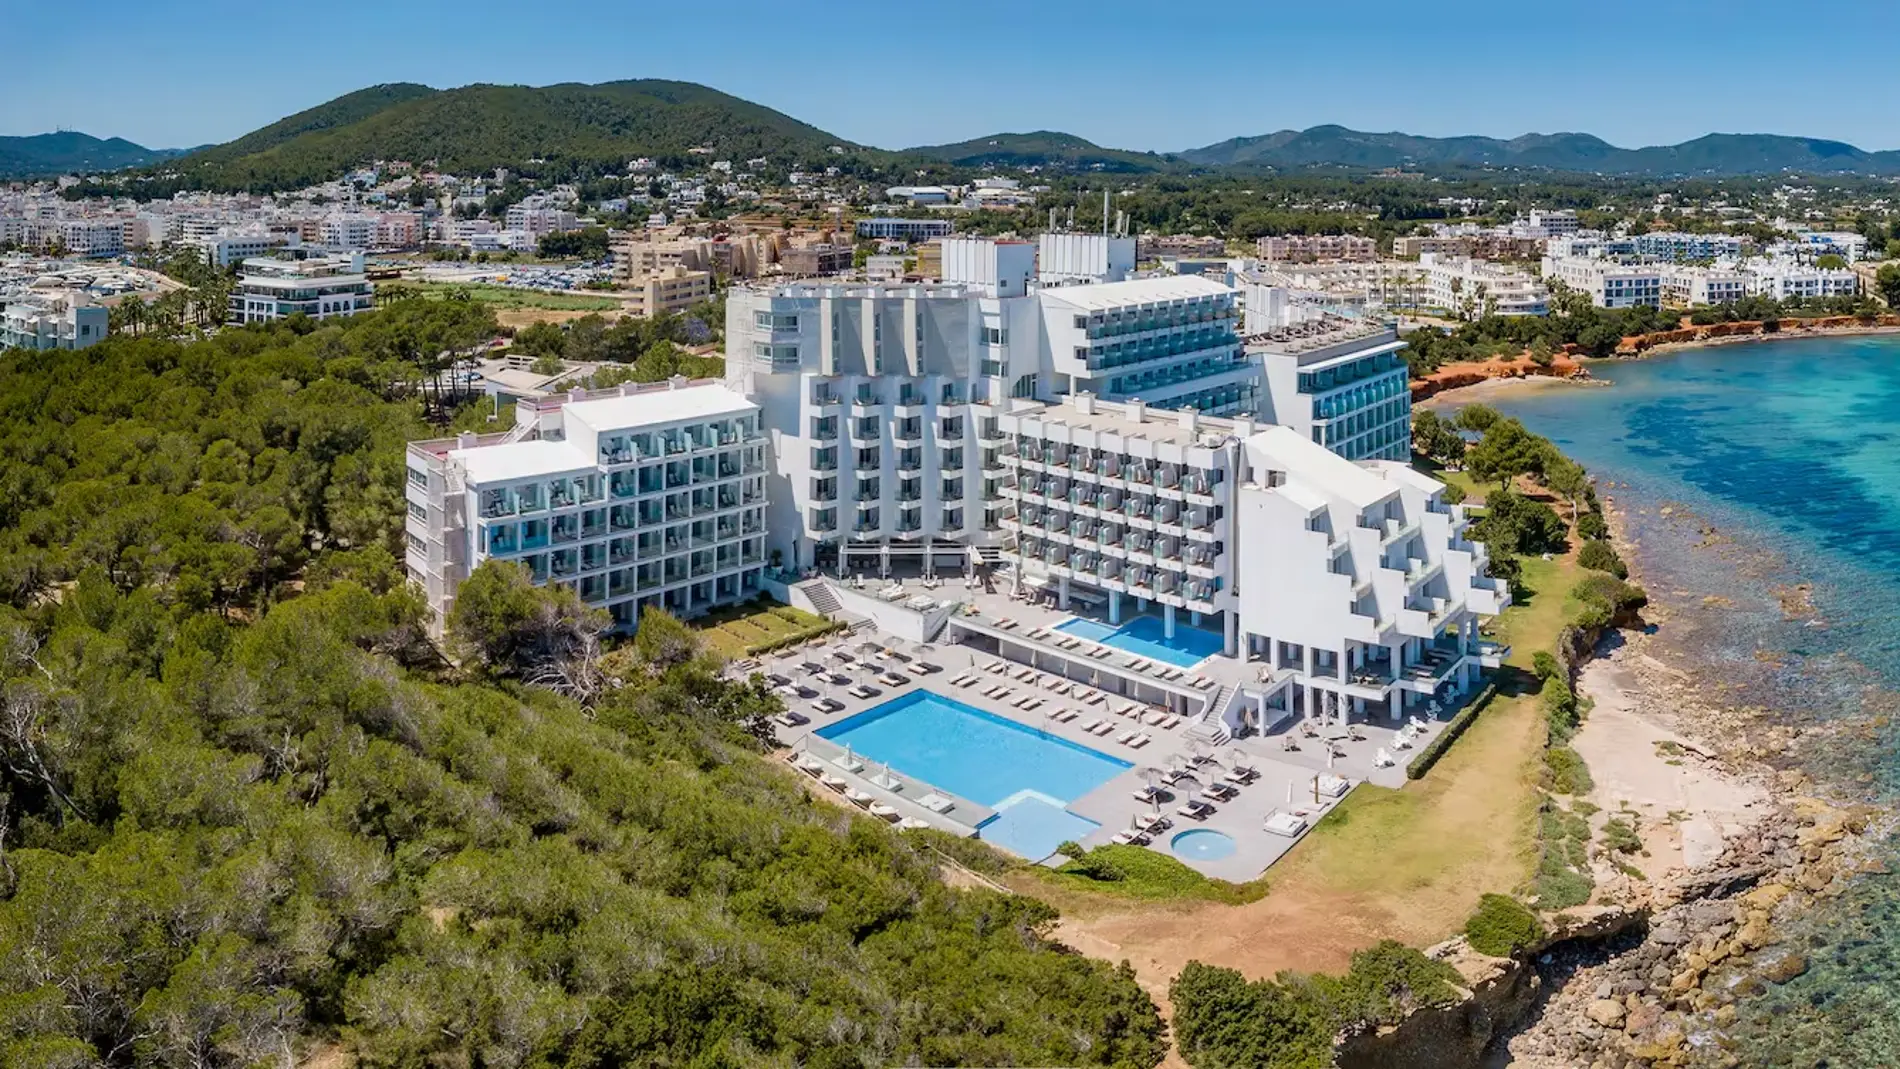 Meliá Ibiza abre sus puertas a un oasis de bienestar y desconexión en Santa Eulària des Riu